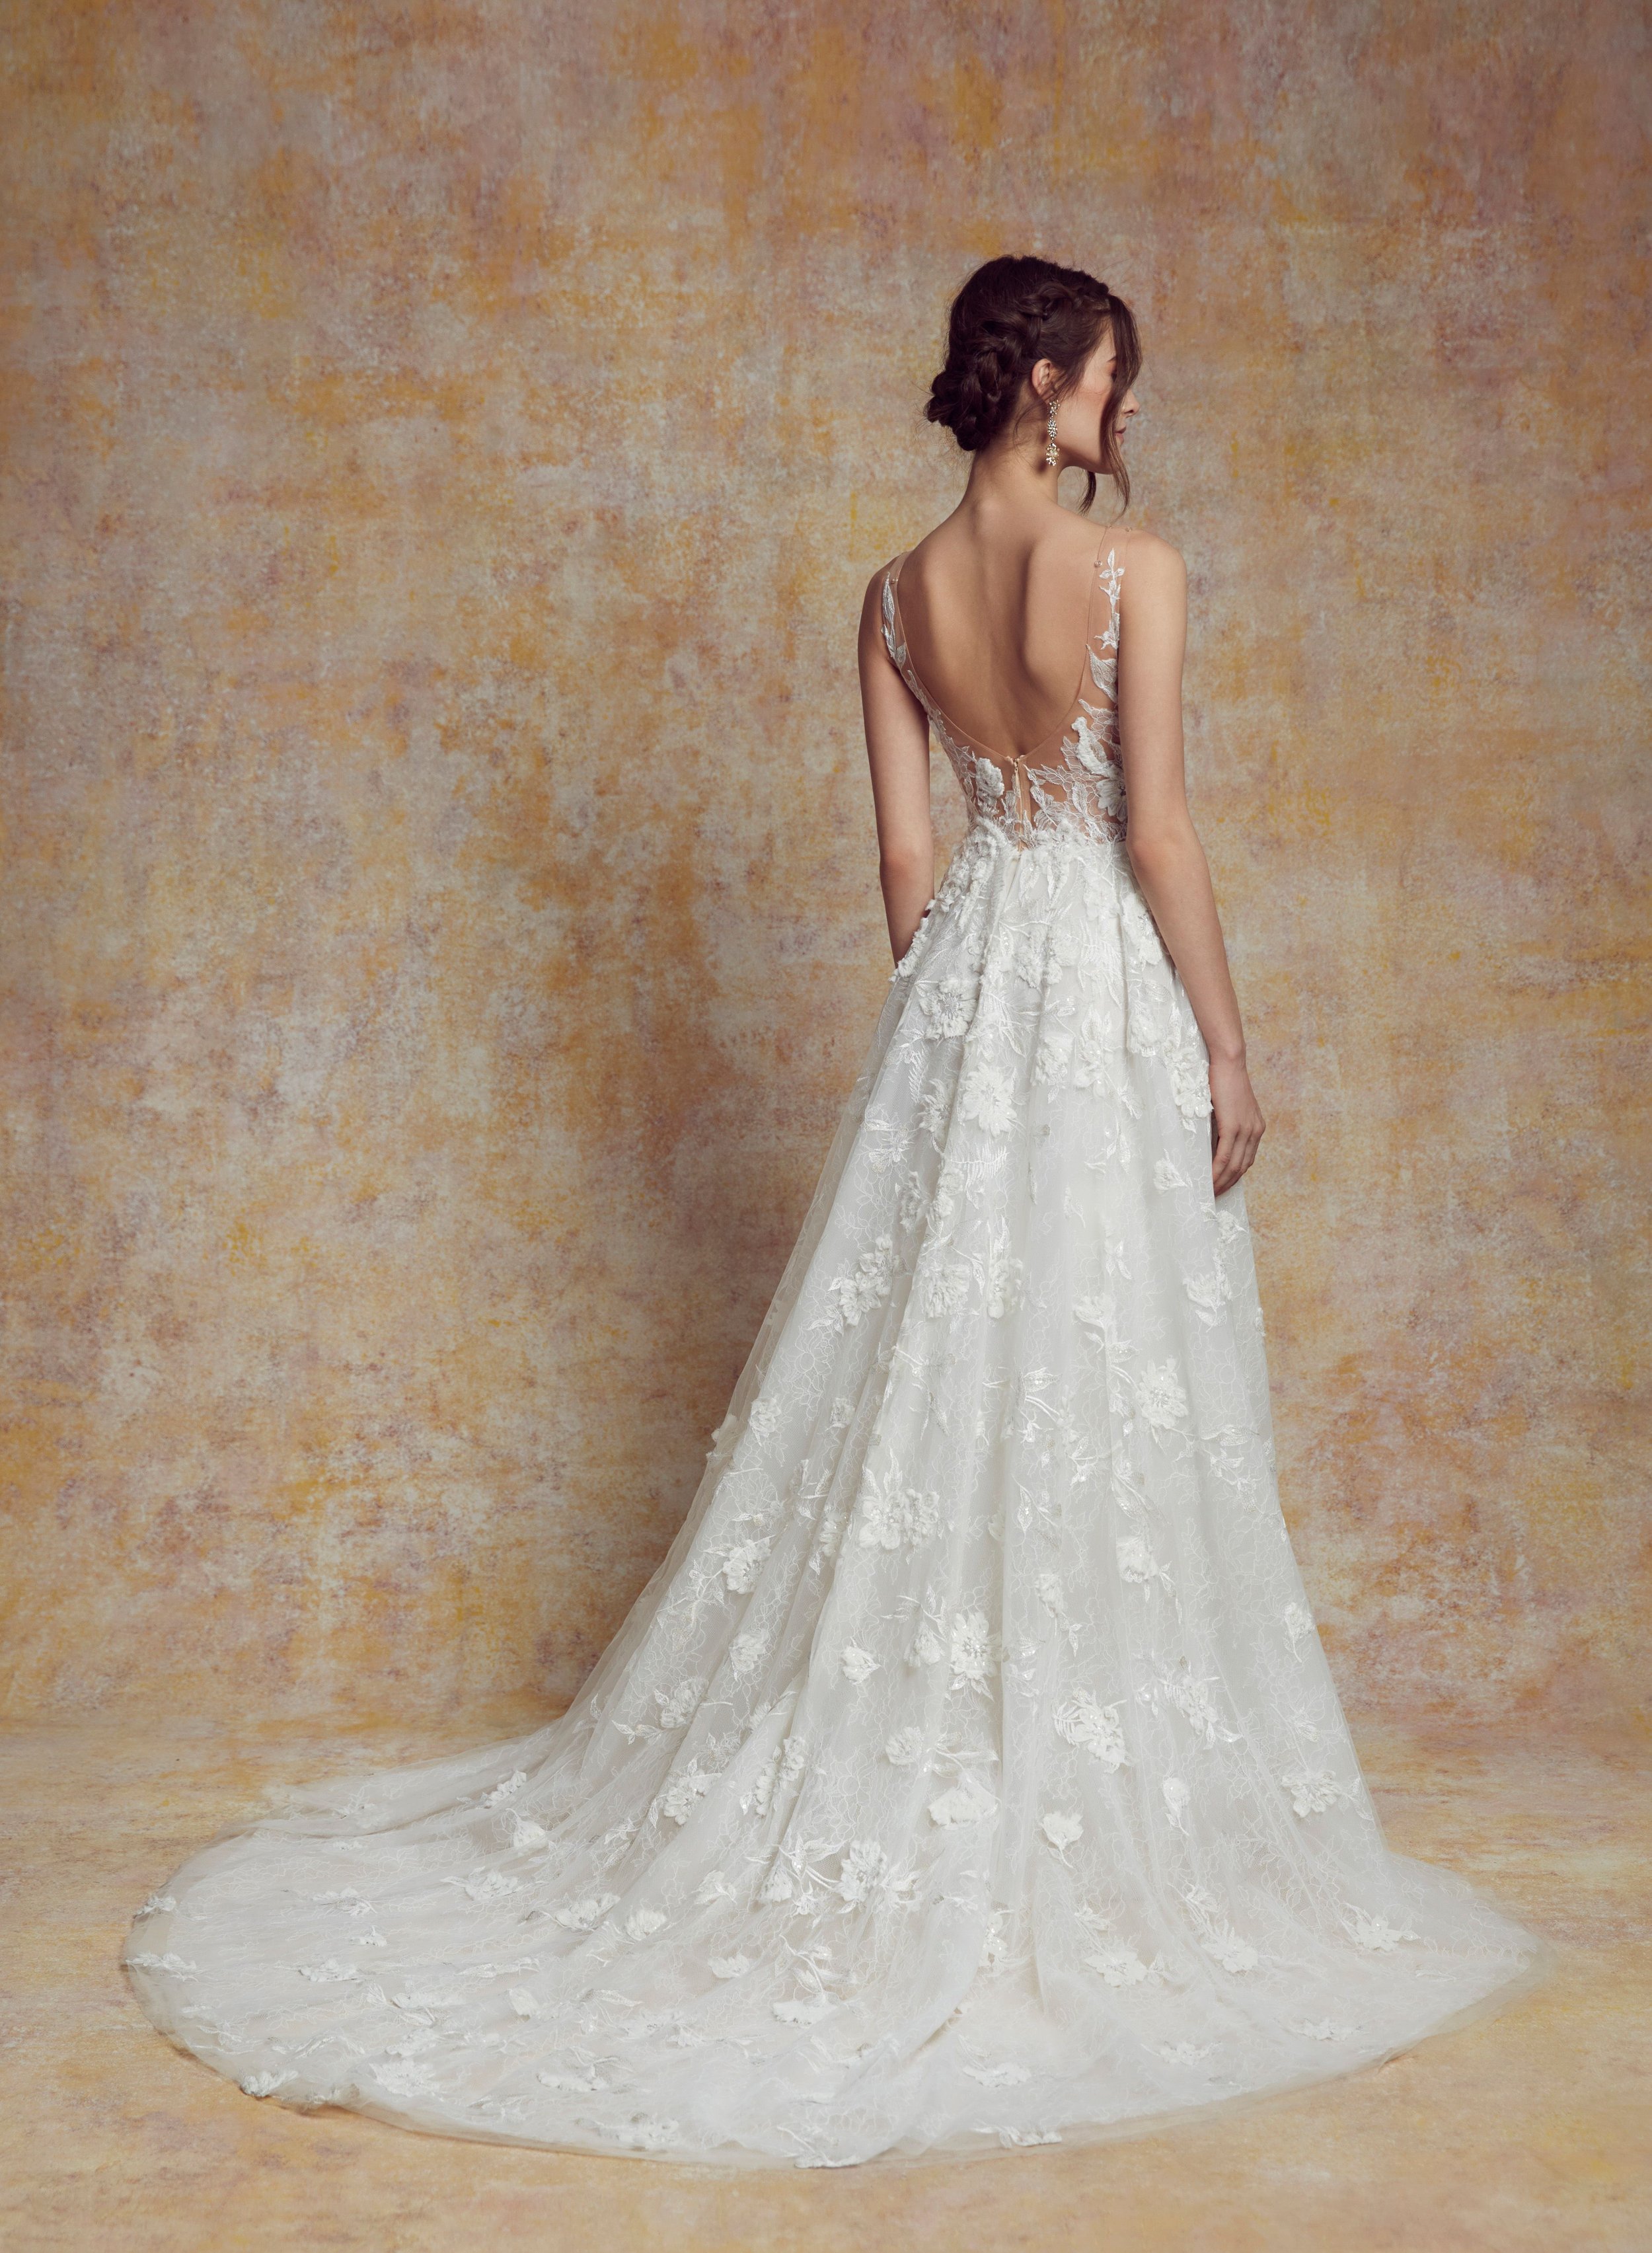 blanc-de-blanc-bridal-boutique-cleveland-dress-wedding-gown-Carmen.jpeg